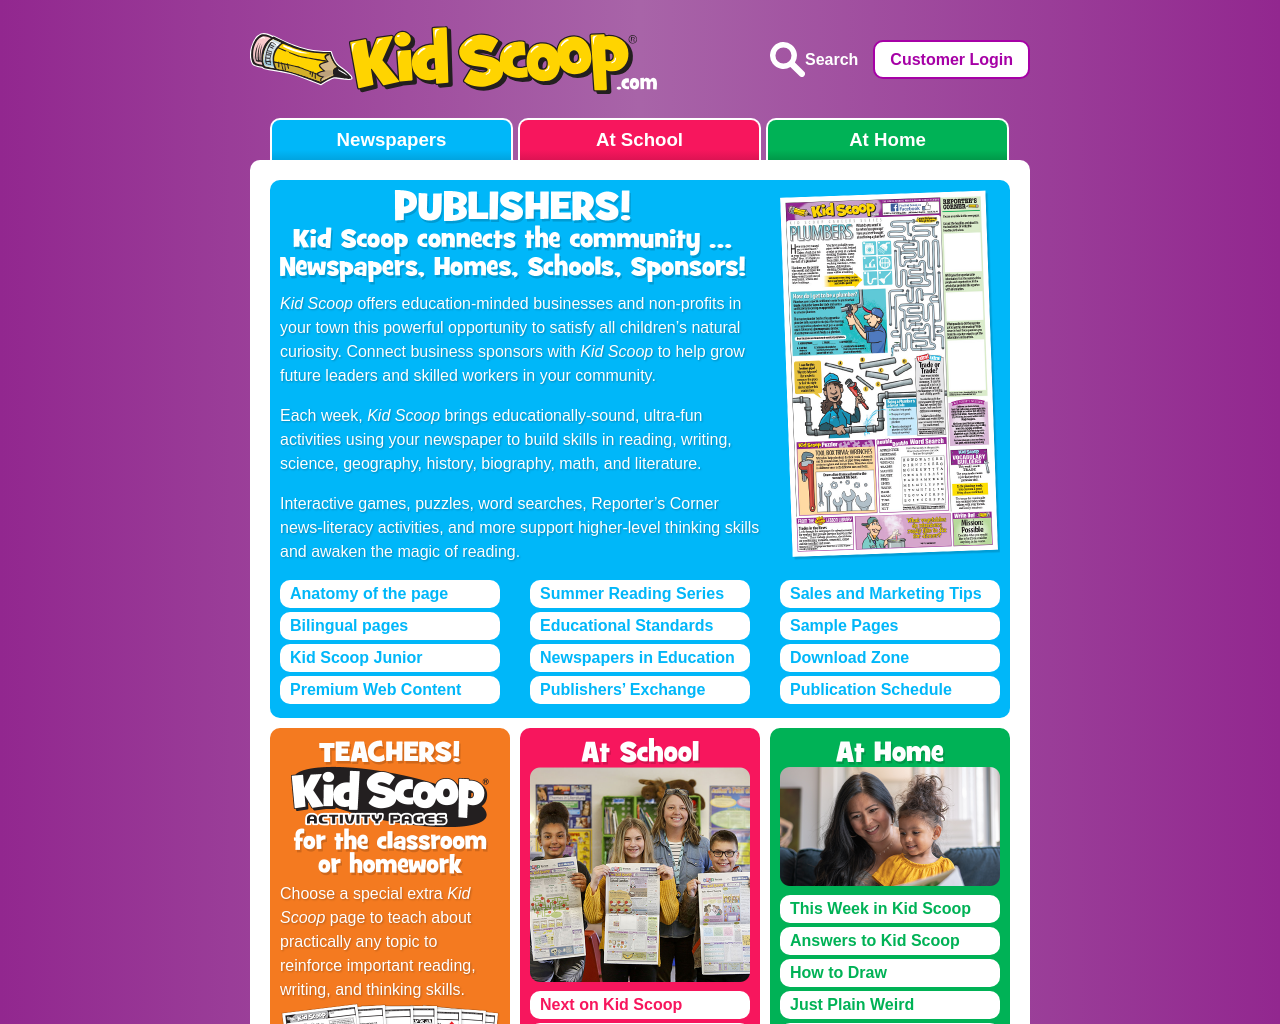 kidscoop.com